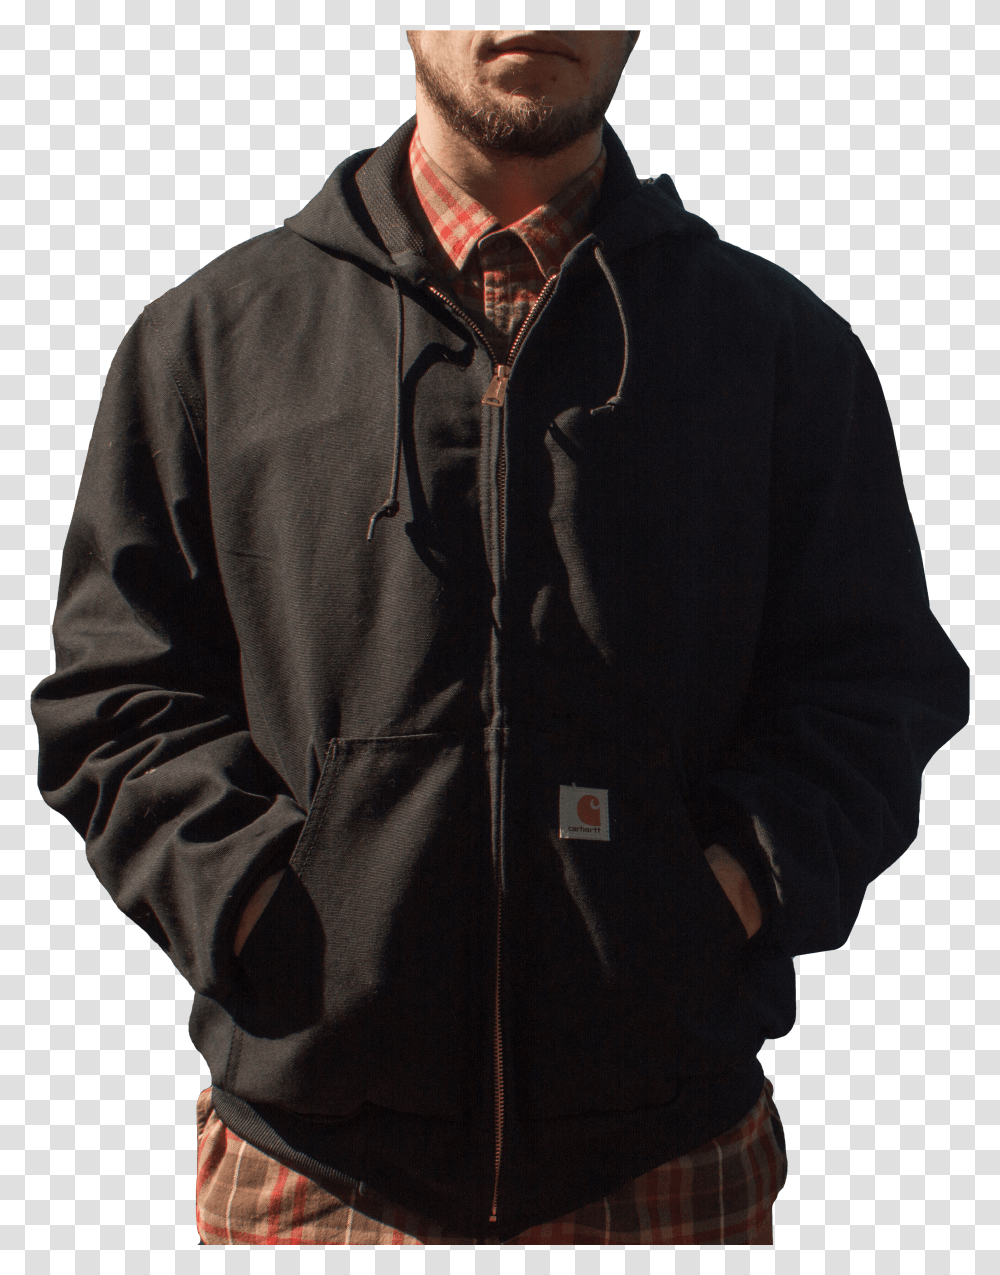 Black Duck Jacket Zipper, Sleeve, Coat, Person Transparent Png